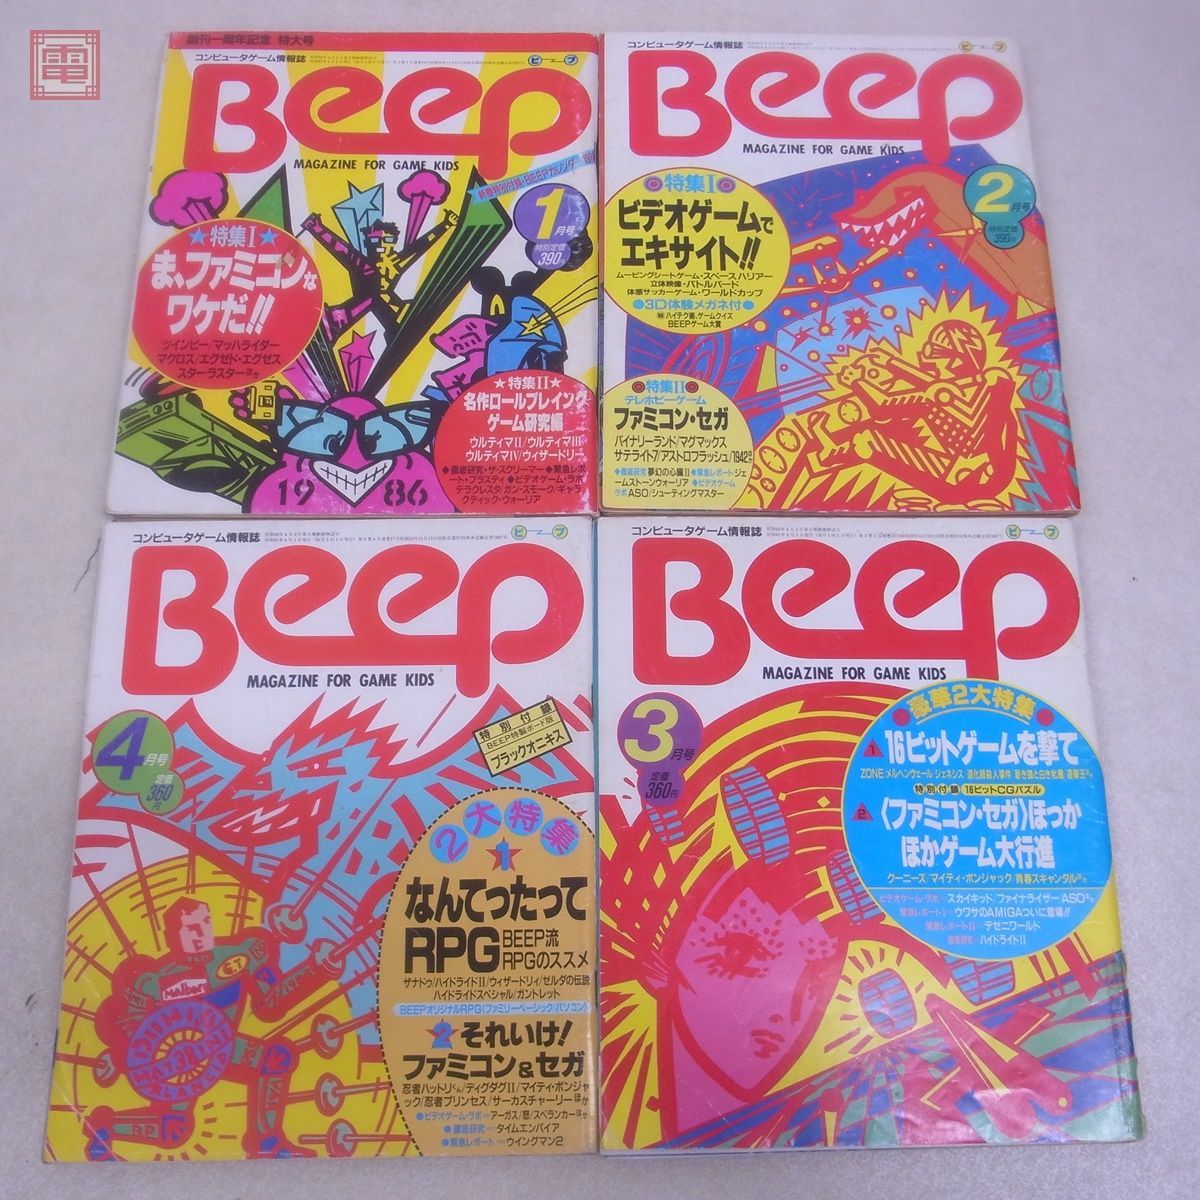  журнал компьютер игра информация журнал ежемесячный Beep 1986 год 1 месяц номер ~12 месяц номер через год .. открытка есть совместно 12 шт. комплект Be p Япония SoftBank [20